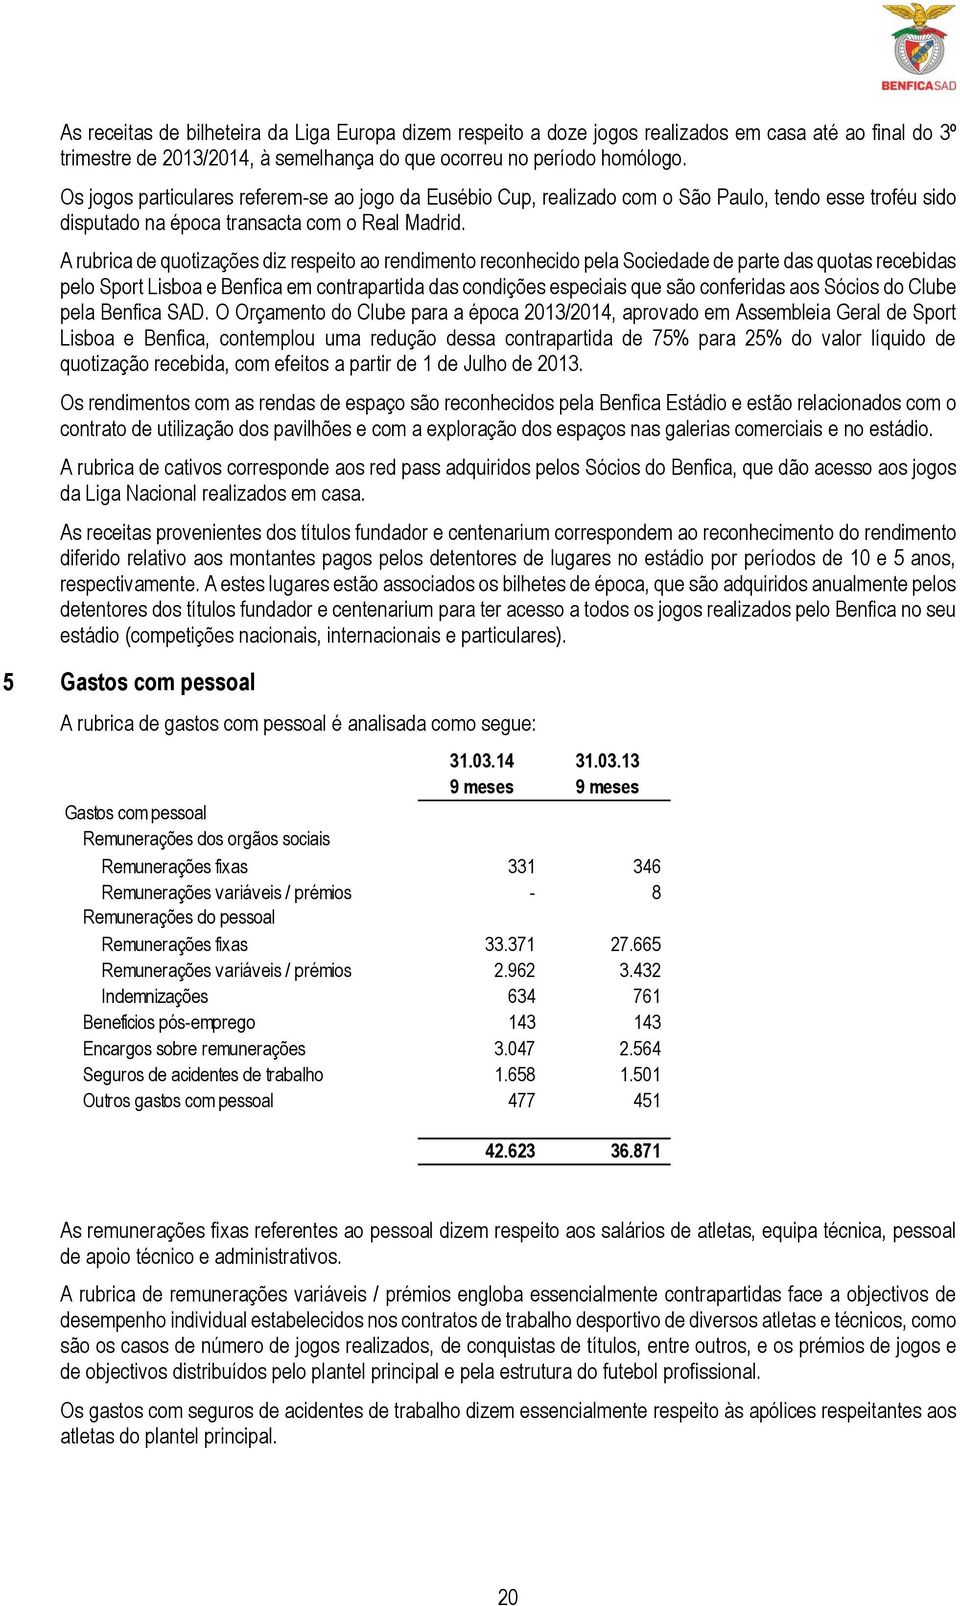 A rubrica de quotizações diz respeito ao rendimento reconhecido pela Sociedade de parte das quotas recebidas pelo Sport Lisboa e Benfica em contrapartida das condições especiais que são conferidas